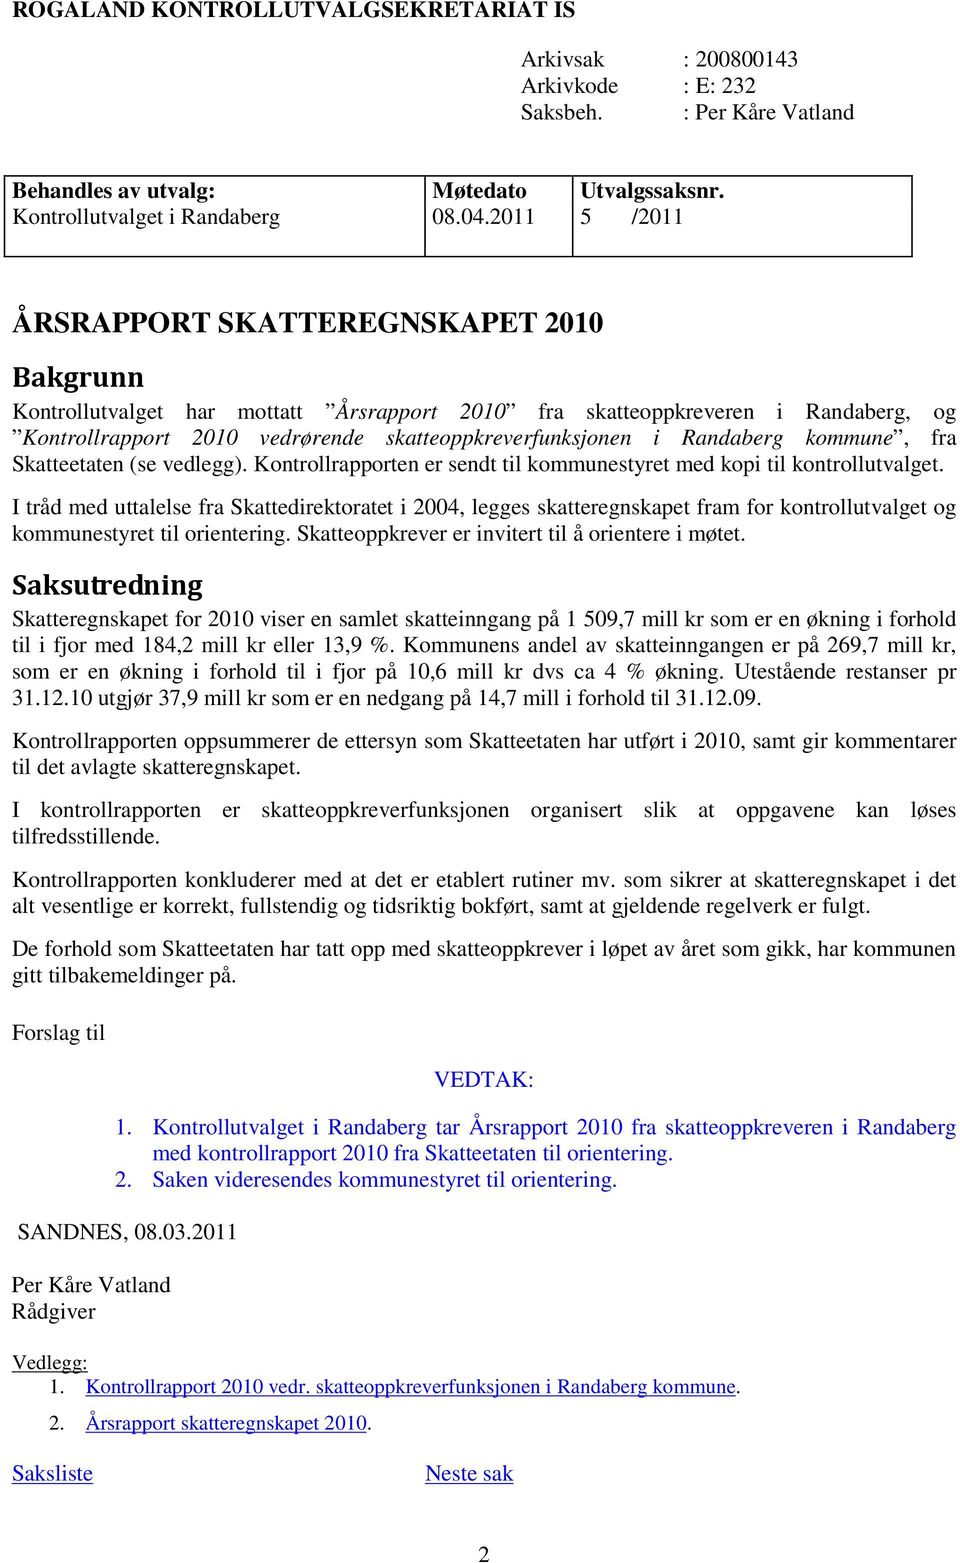 Randaberg kommune, fra Skatteetaten (se vedlegg). Kontrollrapporten er sendt til kommunestyret med kopi til kontrollutvalget.